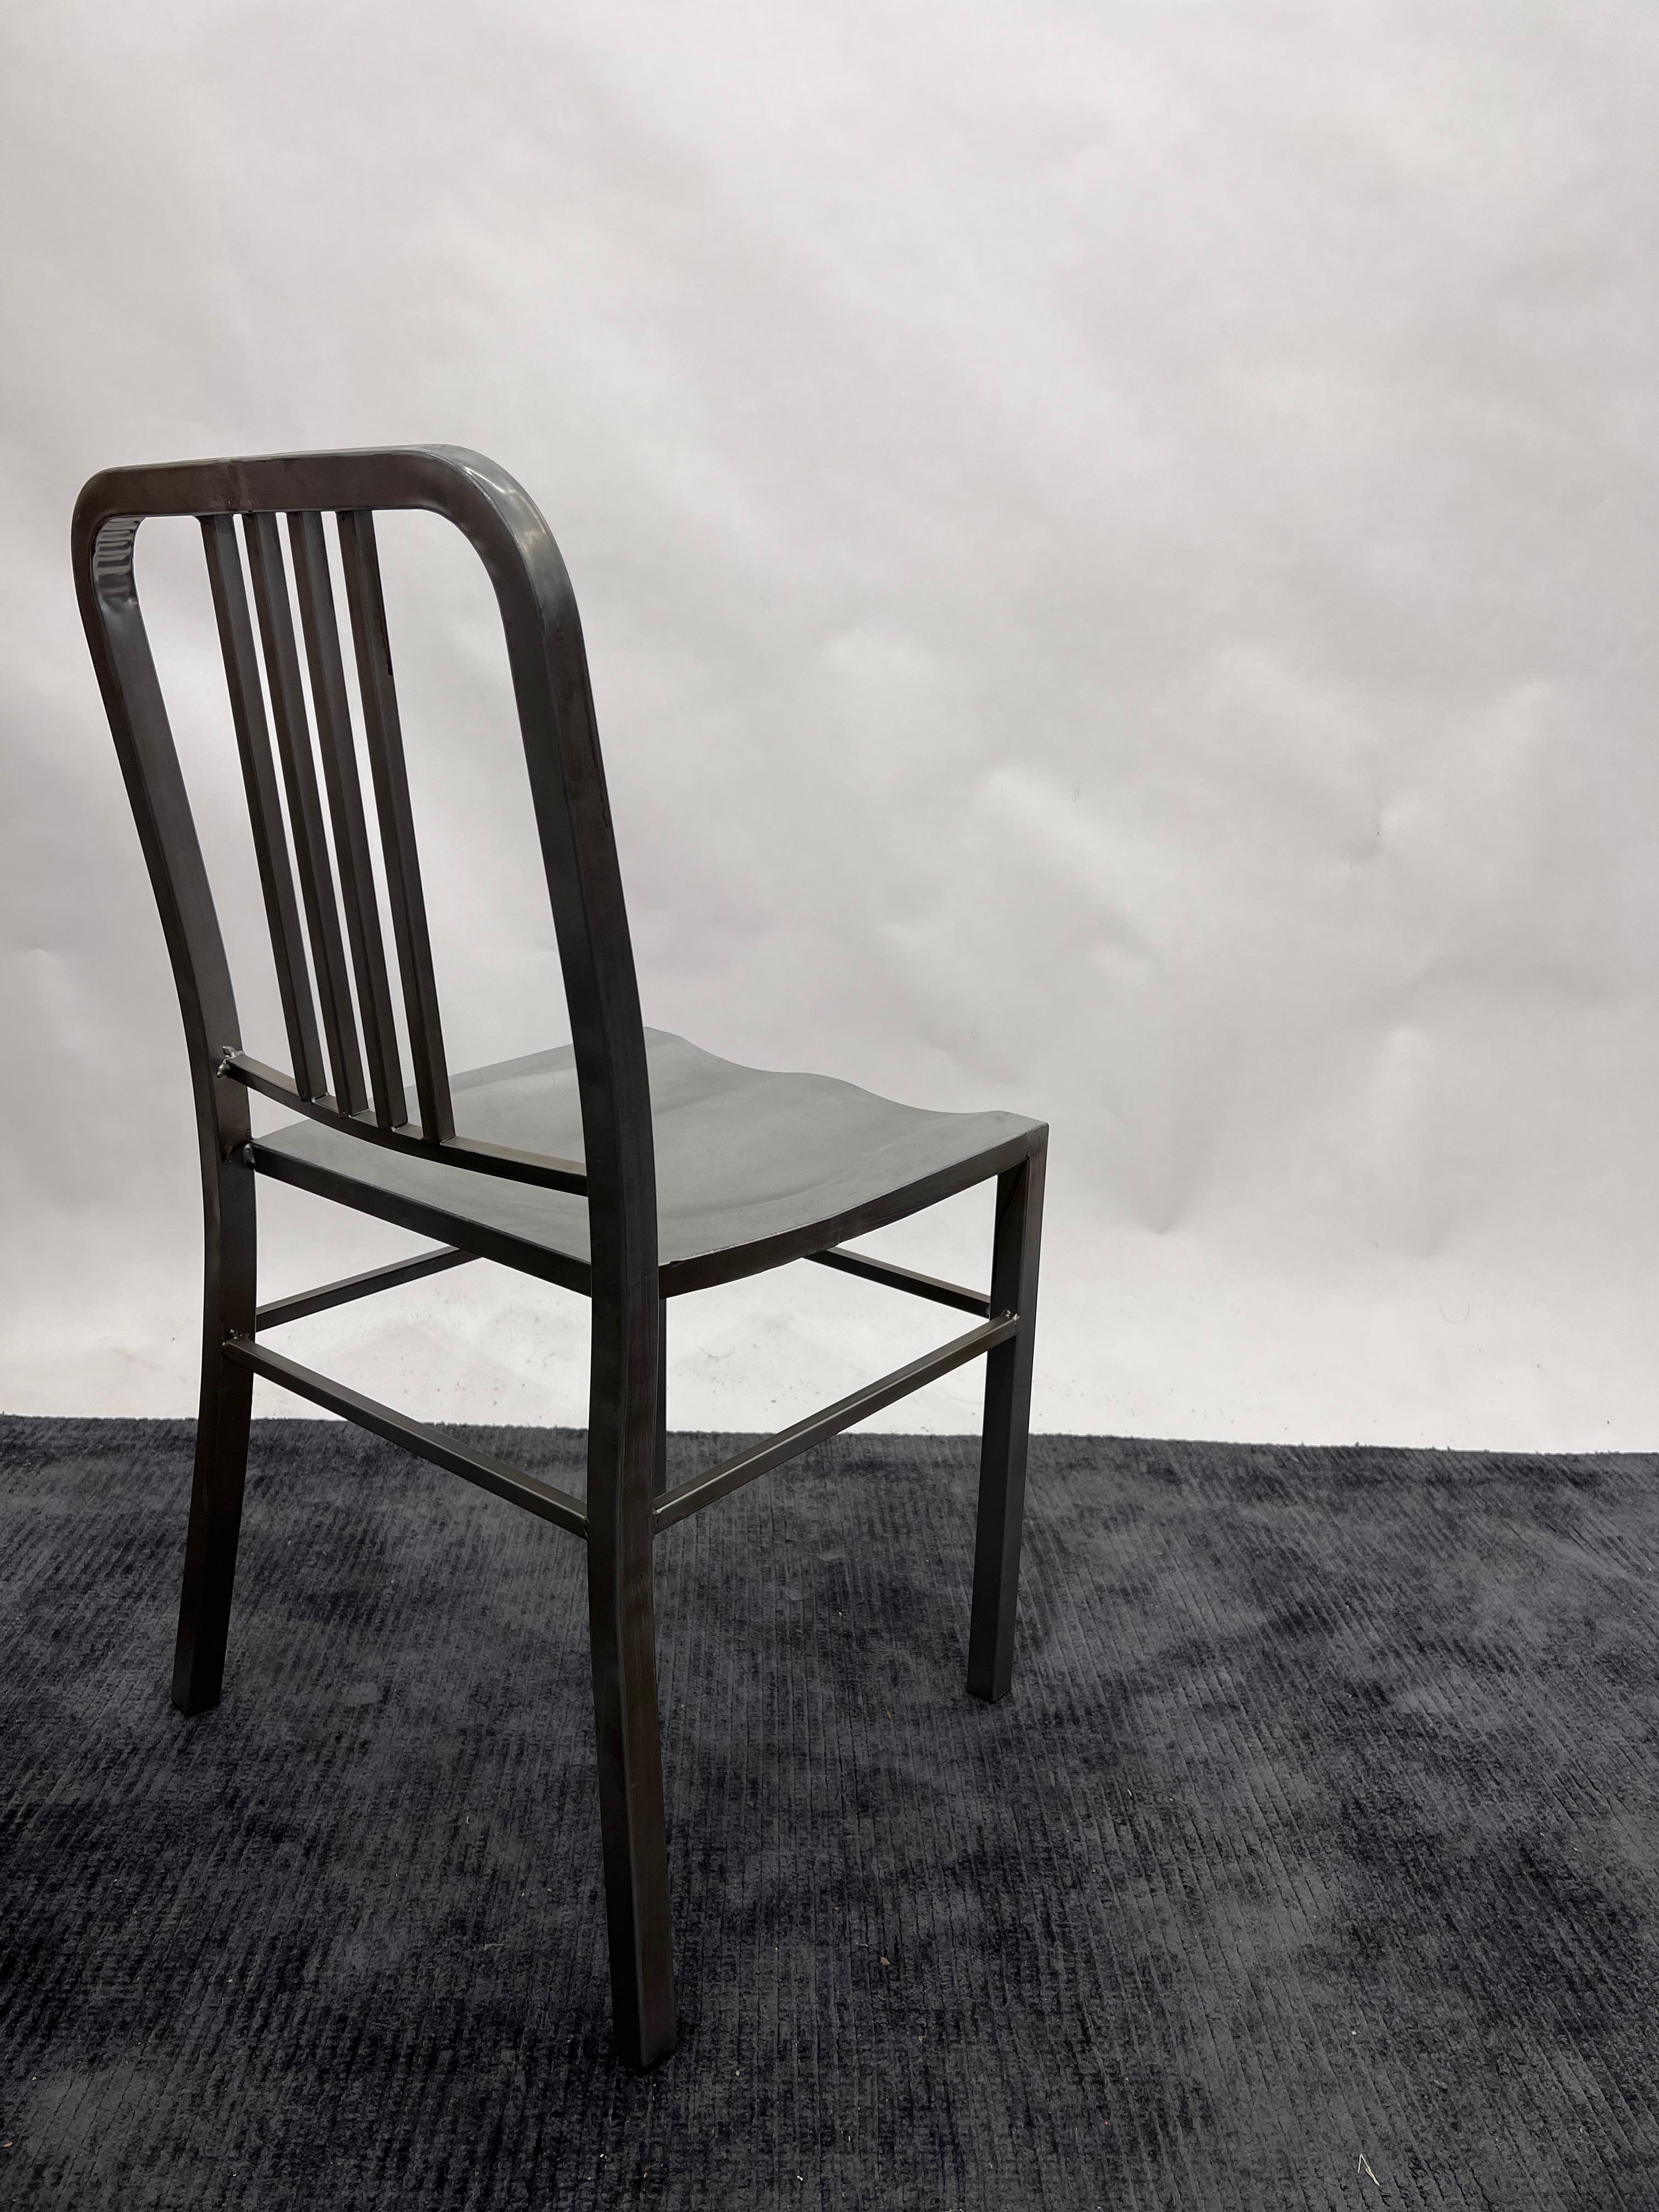 Ces sièges sont inspirés des emblématiques sièges en aluminium fabriqués à la main et conçus à l'origine pour la marine américaine en 1944. Ensemble de 6 chaises très robustes en métal.

Mesures : 17,25 hauteur d'assise 
Hauteur du dossier